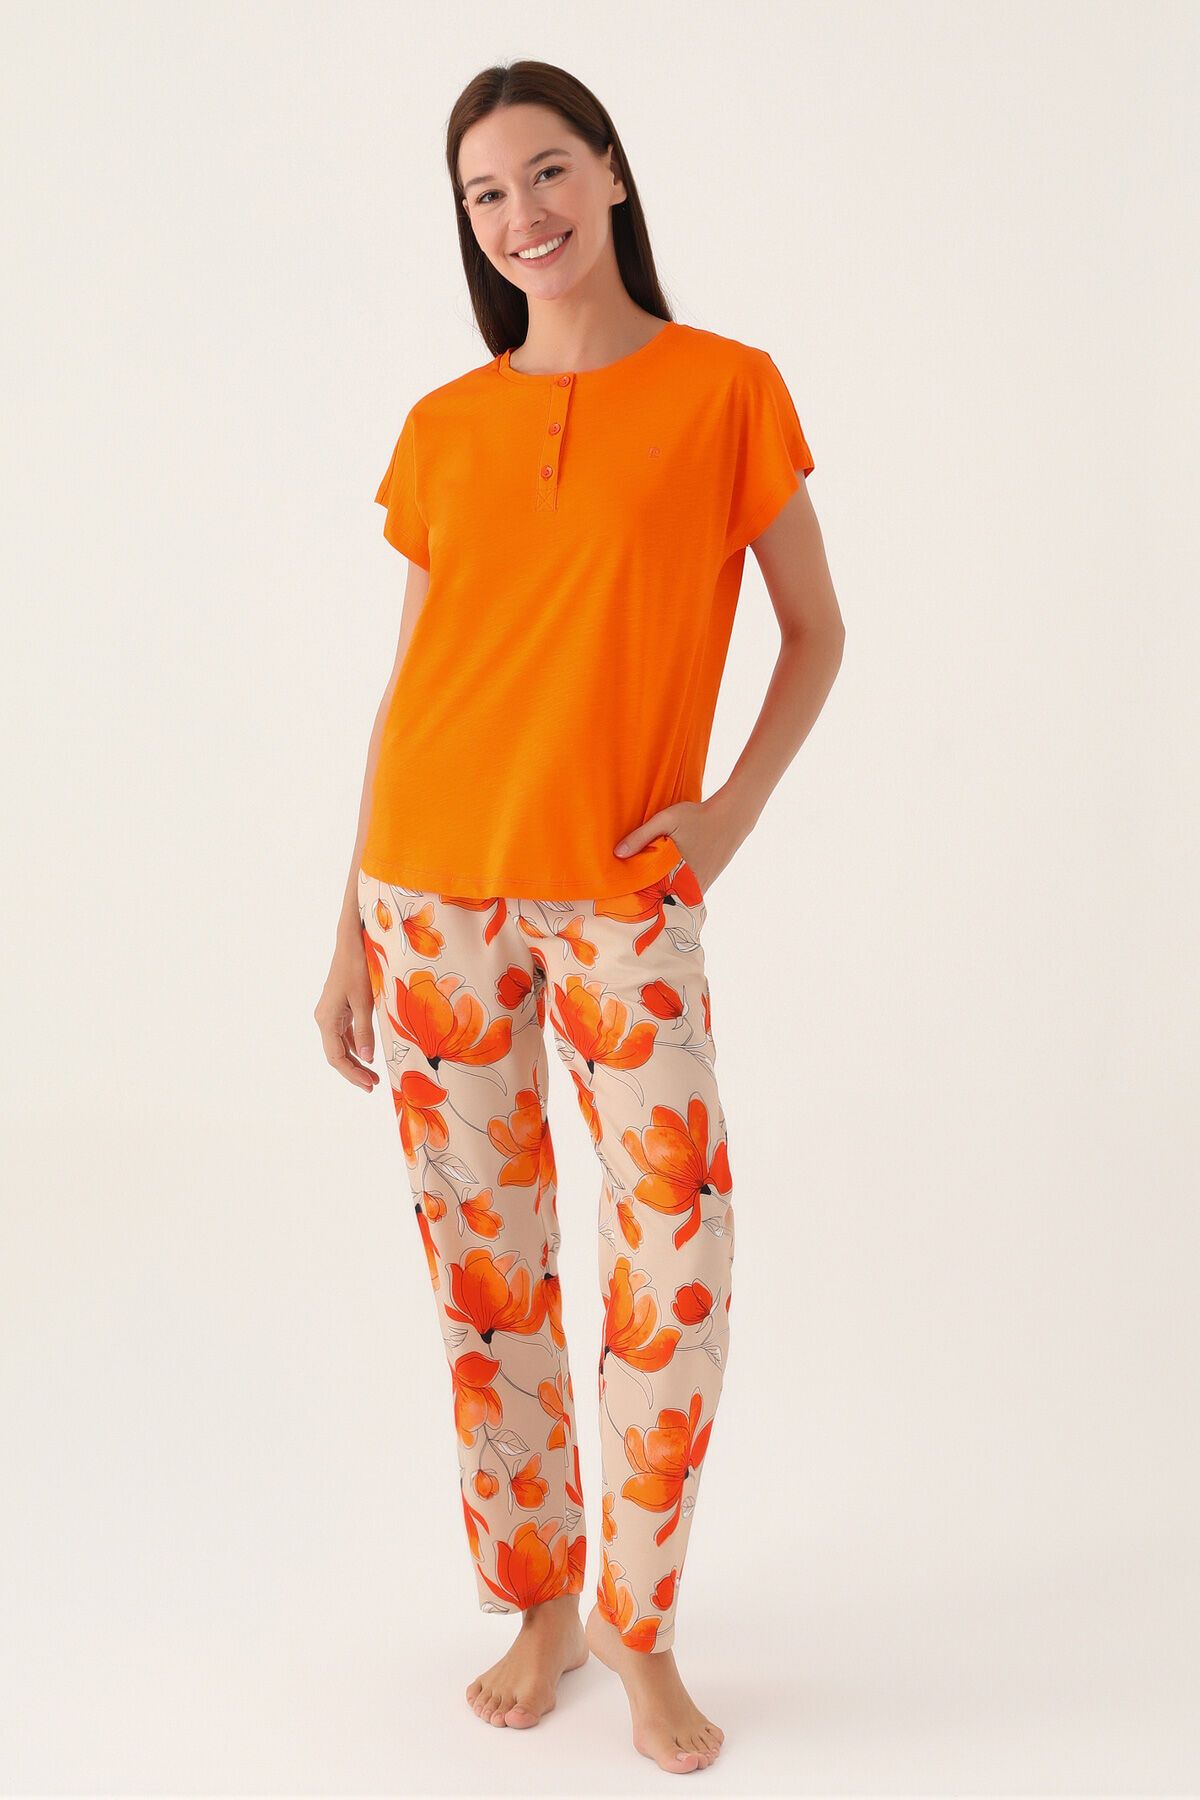 Pierre Cardin Orange Turuncu Kadın Kısa Kol Pijama Takımı